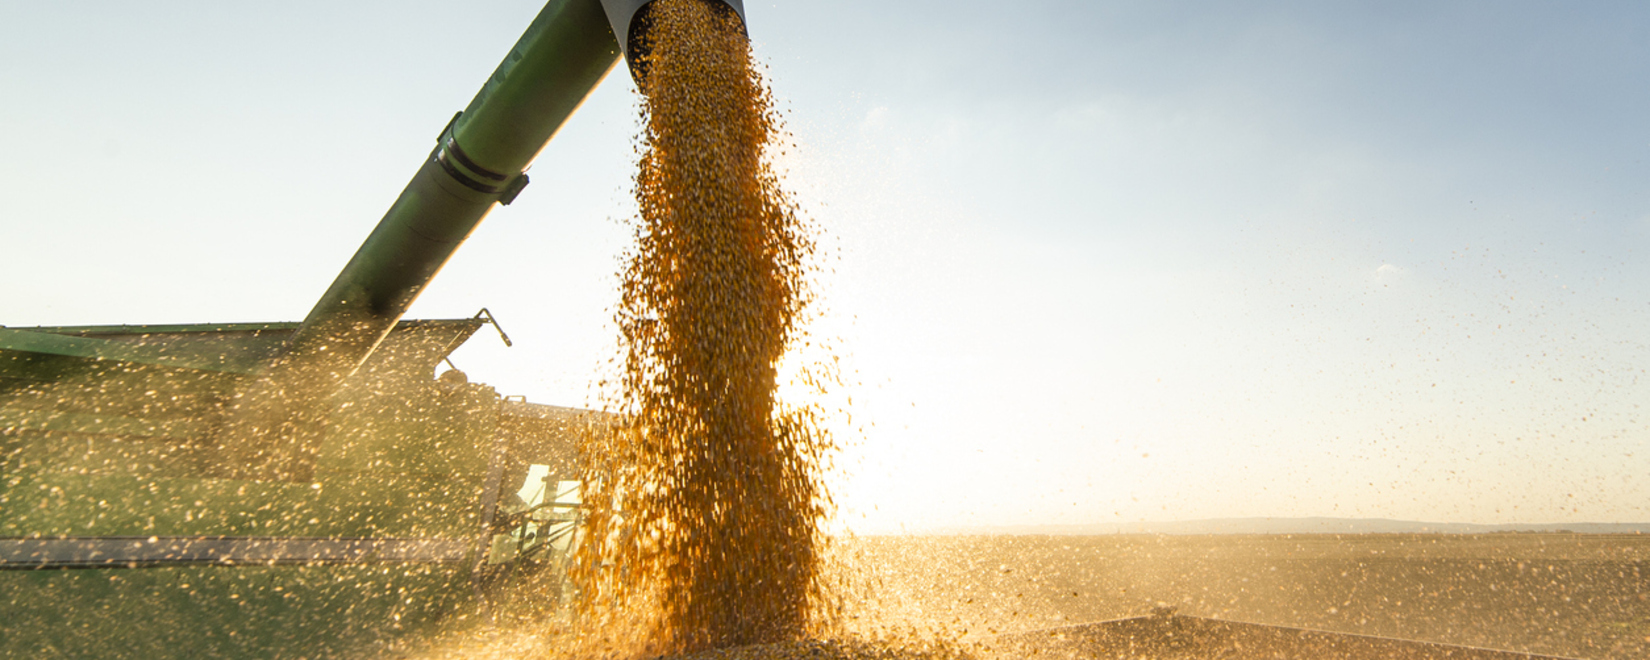 Есть все шансы, что экспорт пшеницы будет увеличен, в сравнении с предыдущим годом